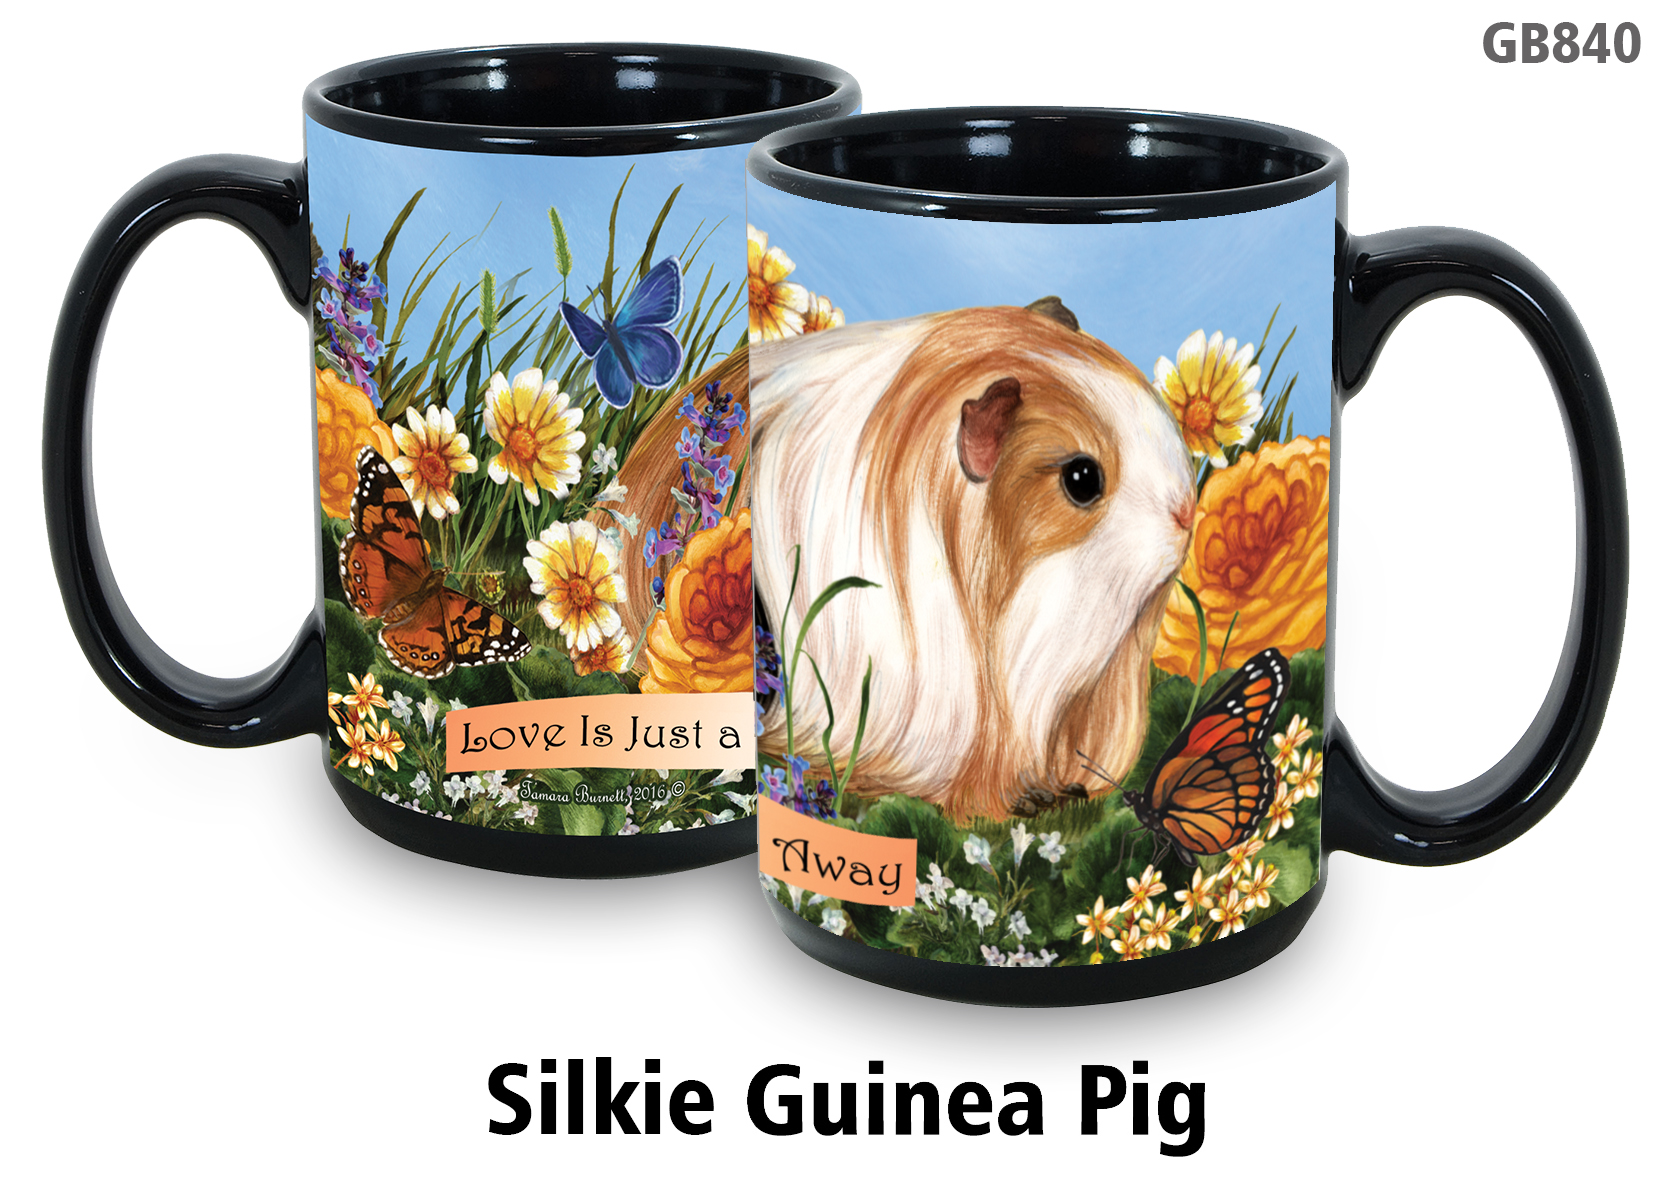 Guinea Pig Silkie - Garden Party Fun Mug 15 oz Image